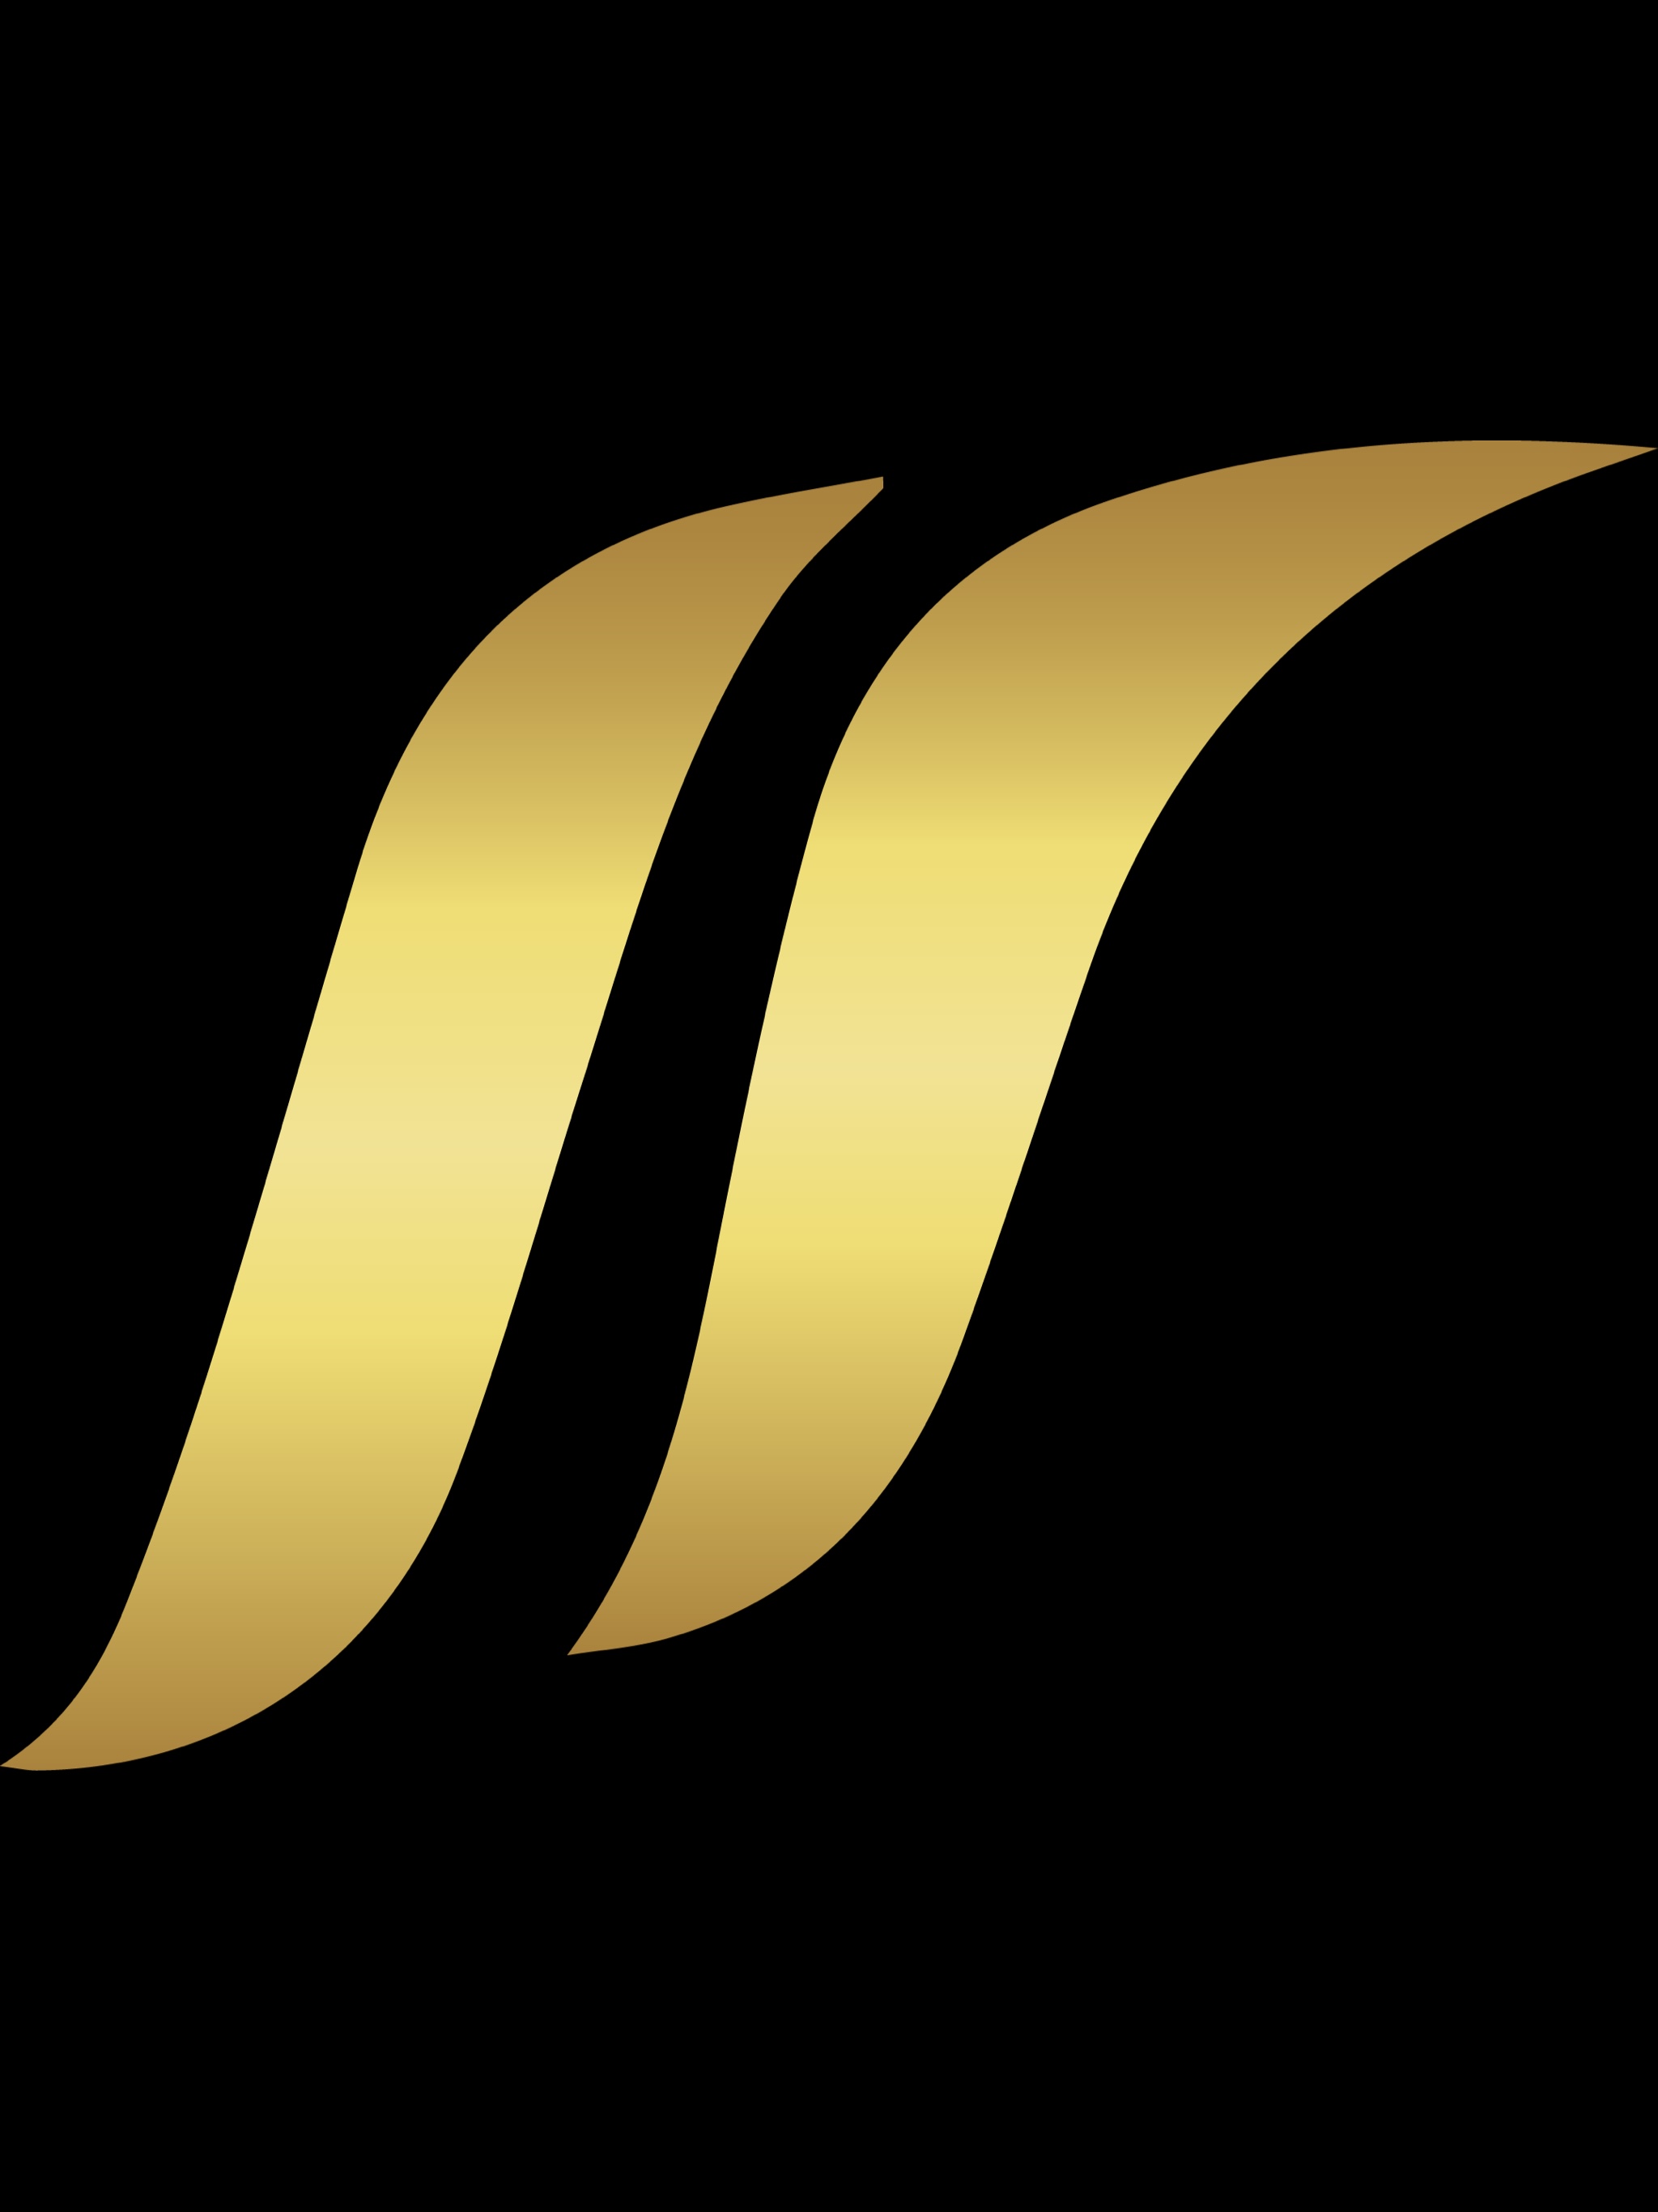 The Super Series Club-logo